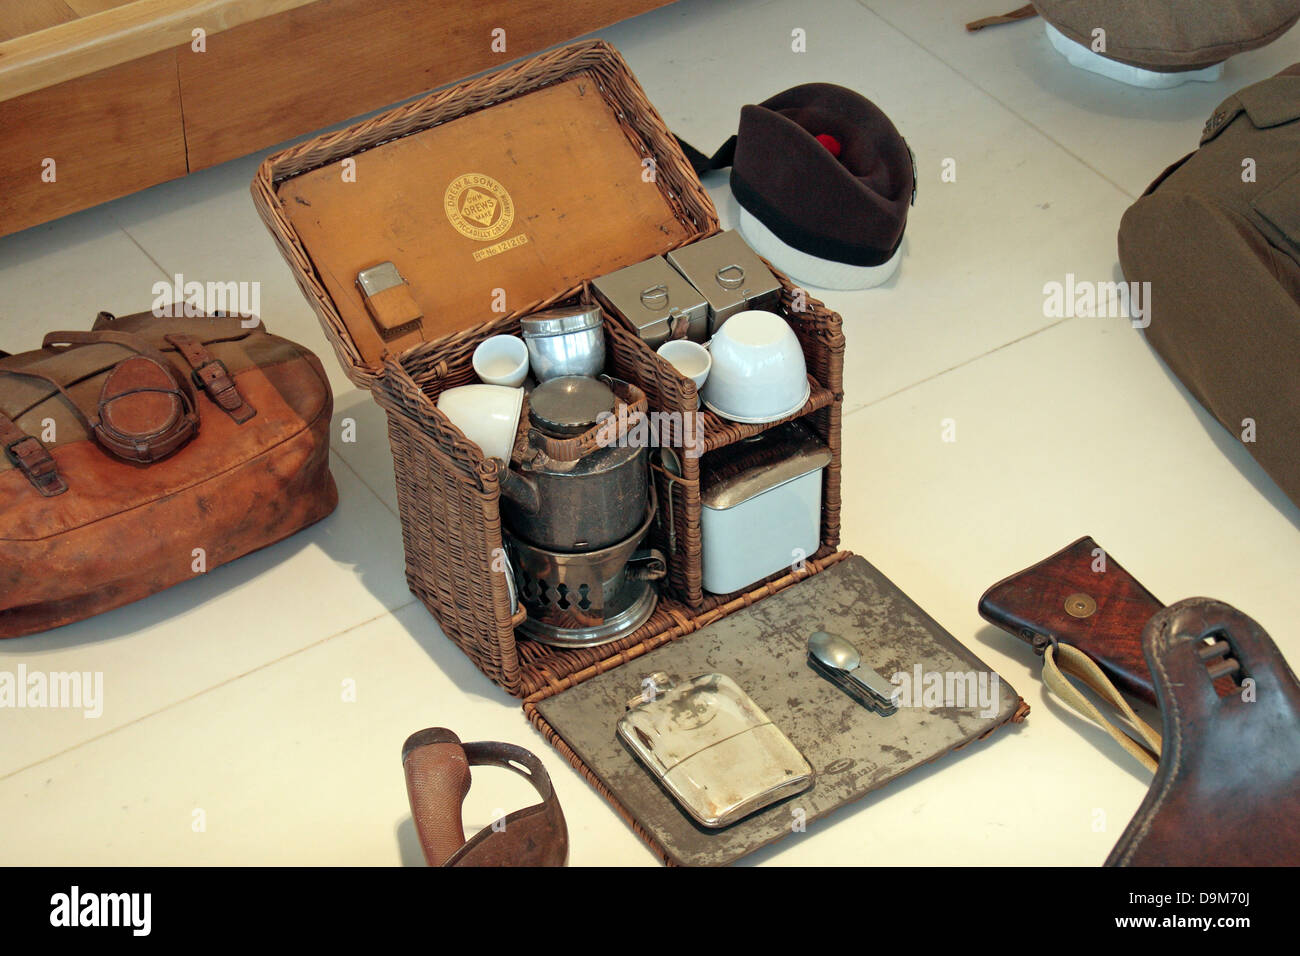 La Seconde Guerre mondiale, un kit de thé d'un lieutenant d'infanterie britannique à l'historique de la Grande Guerre, Péronne, Musée de France. Banque D'Images